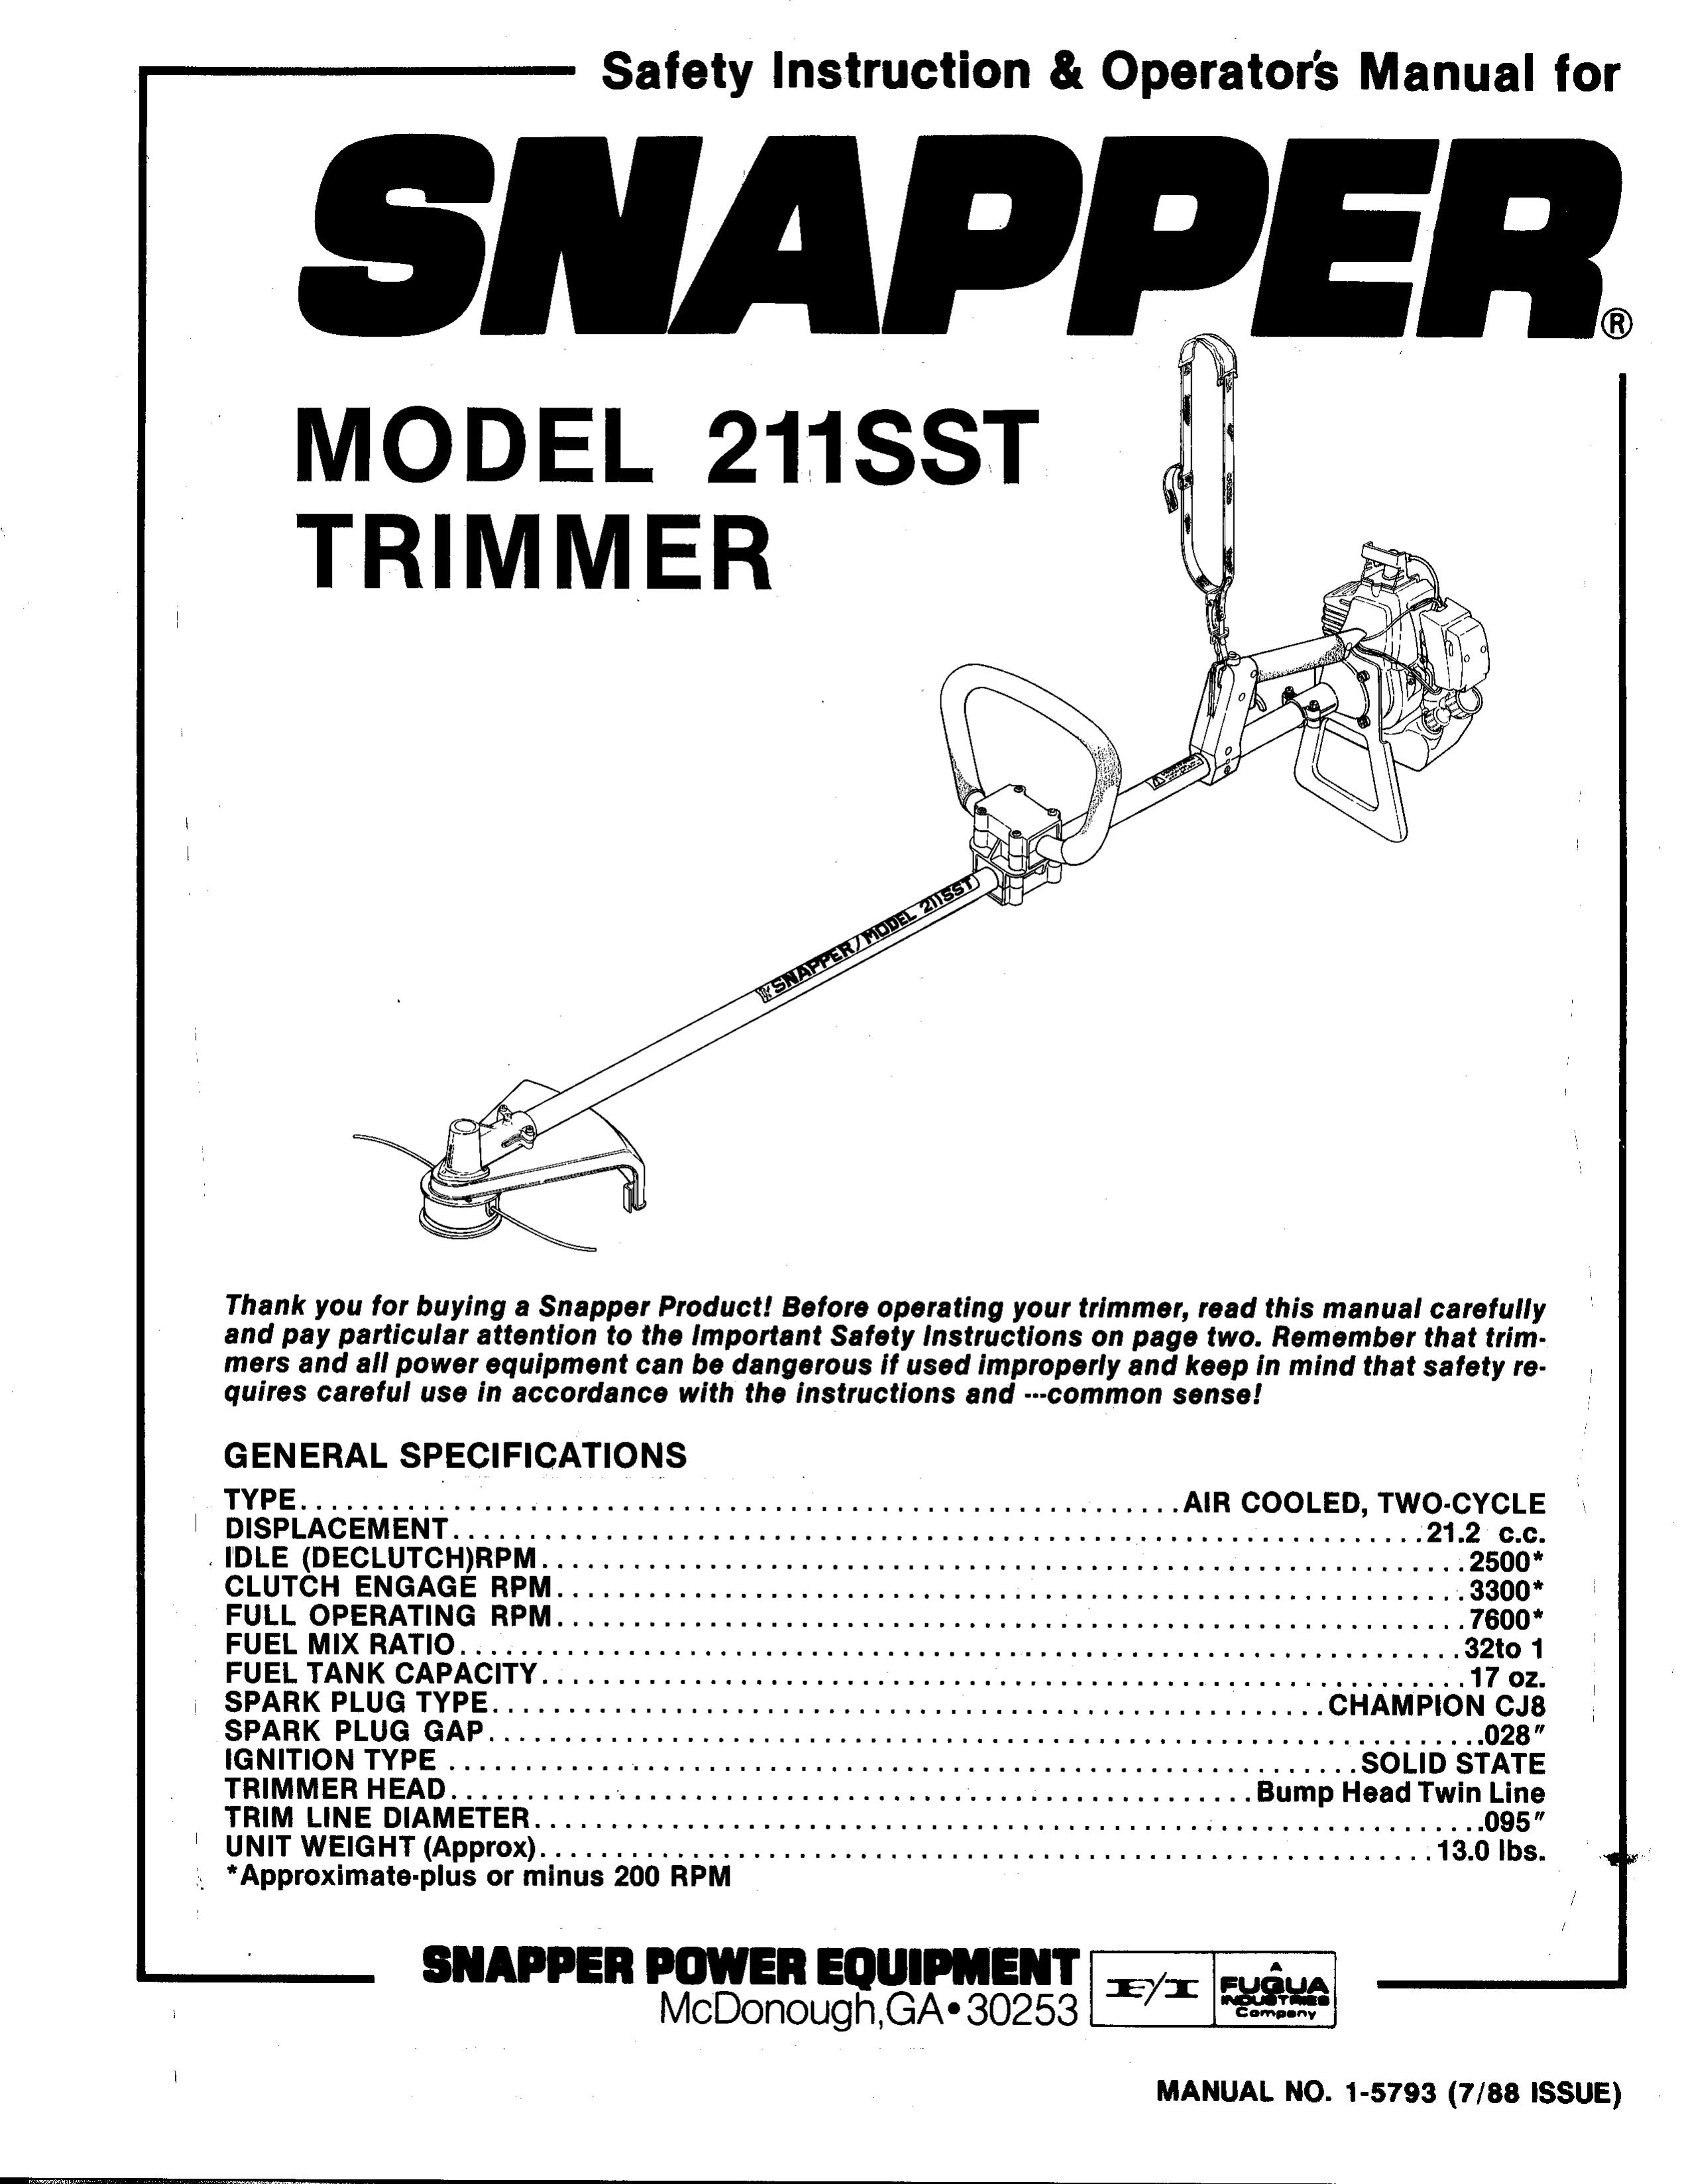 Snapper 211SST Trimmer User Manual